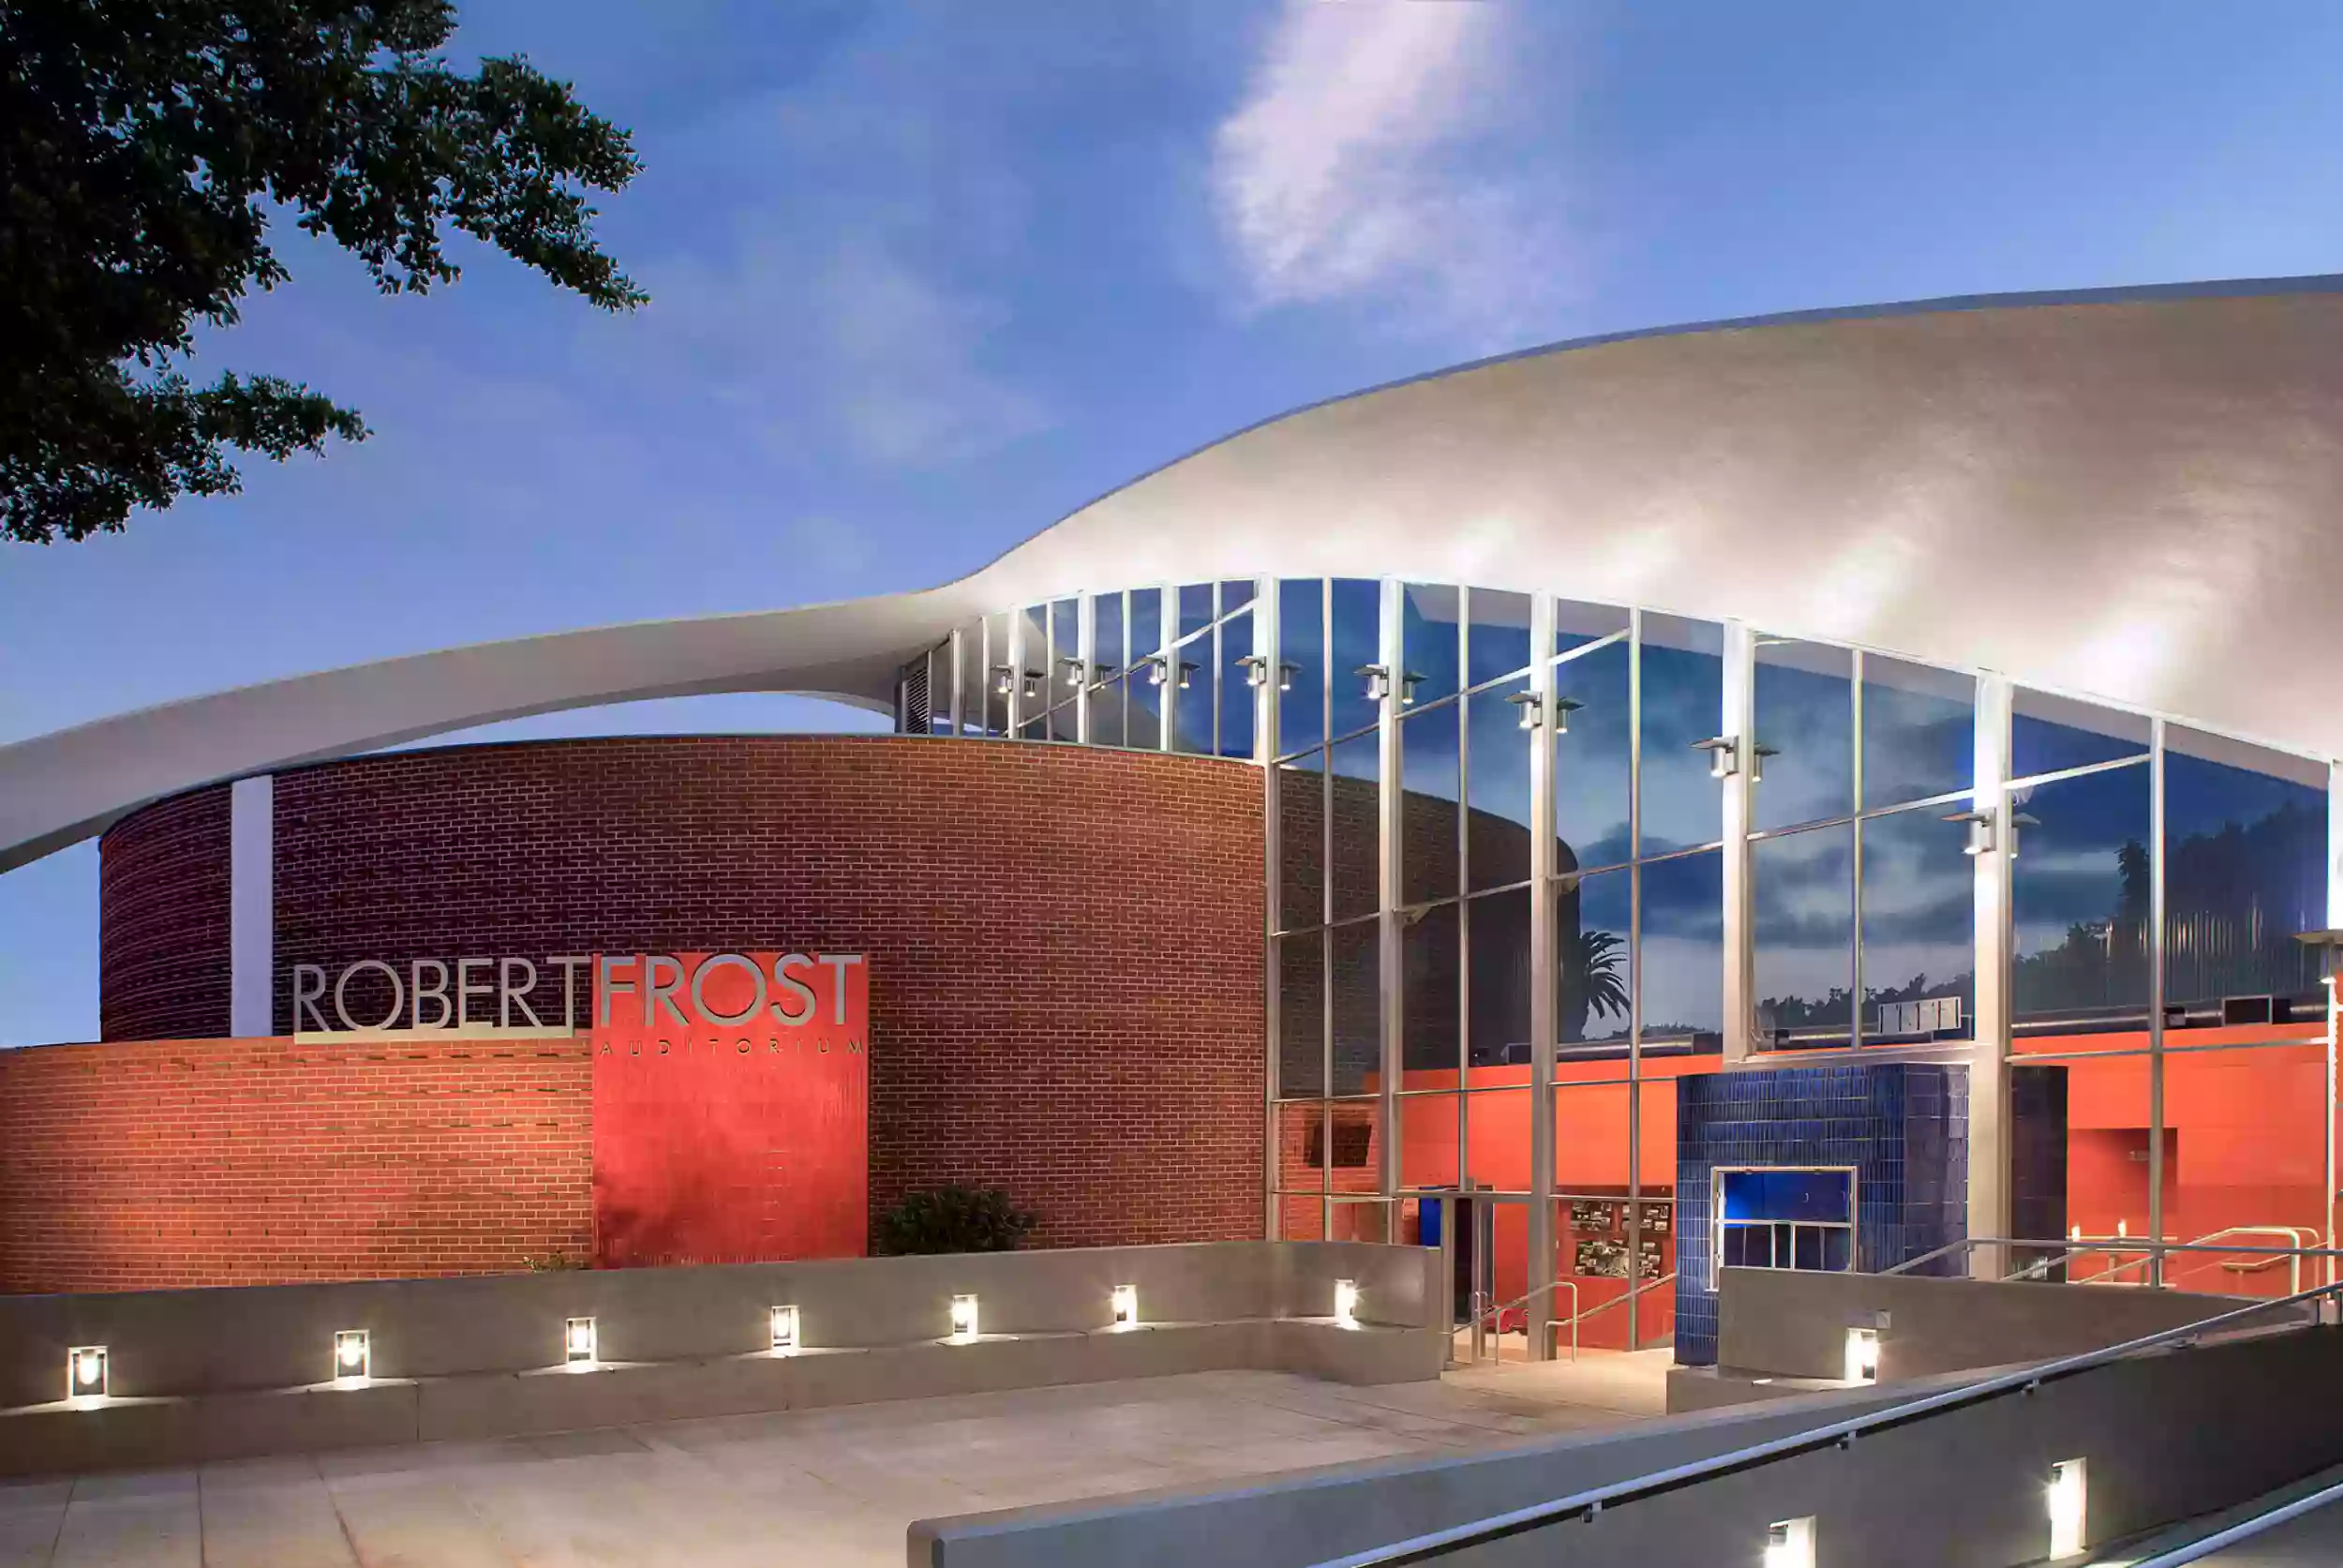 Robert Frost Auditorium